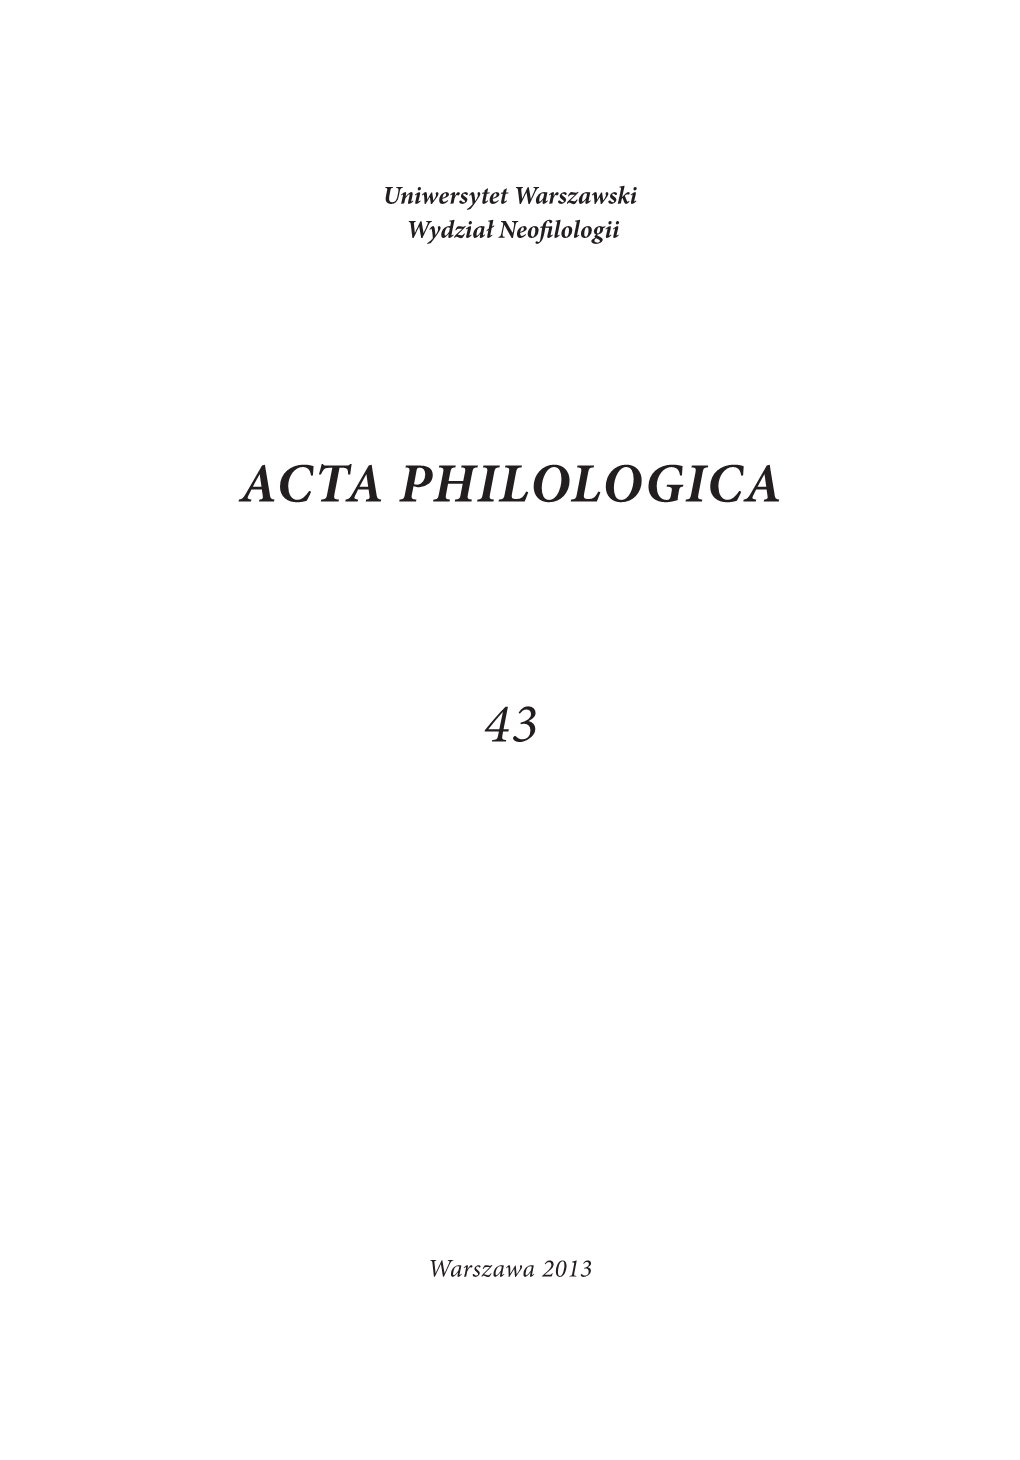 Acta Philologica 43